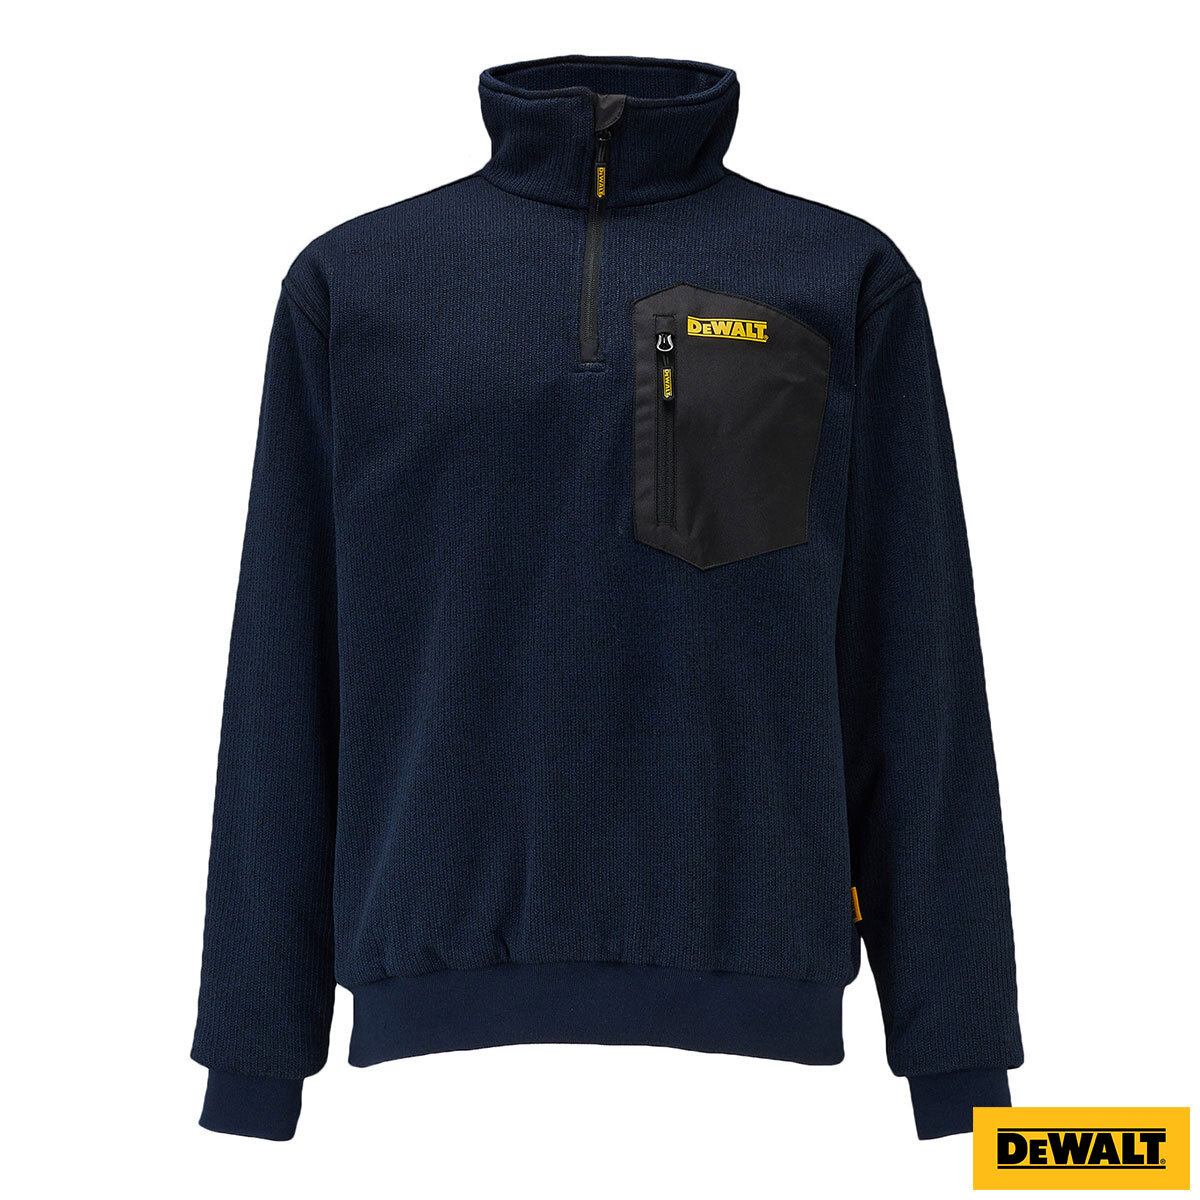 Dewalt Brunswick 1/4 Zip Sweatshirt in Navy